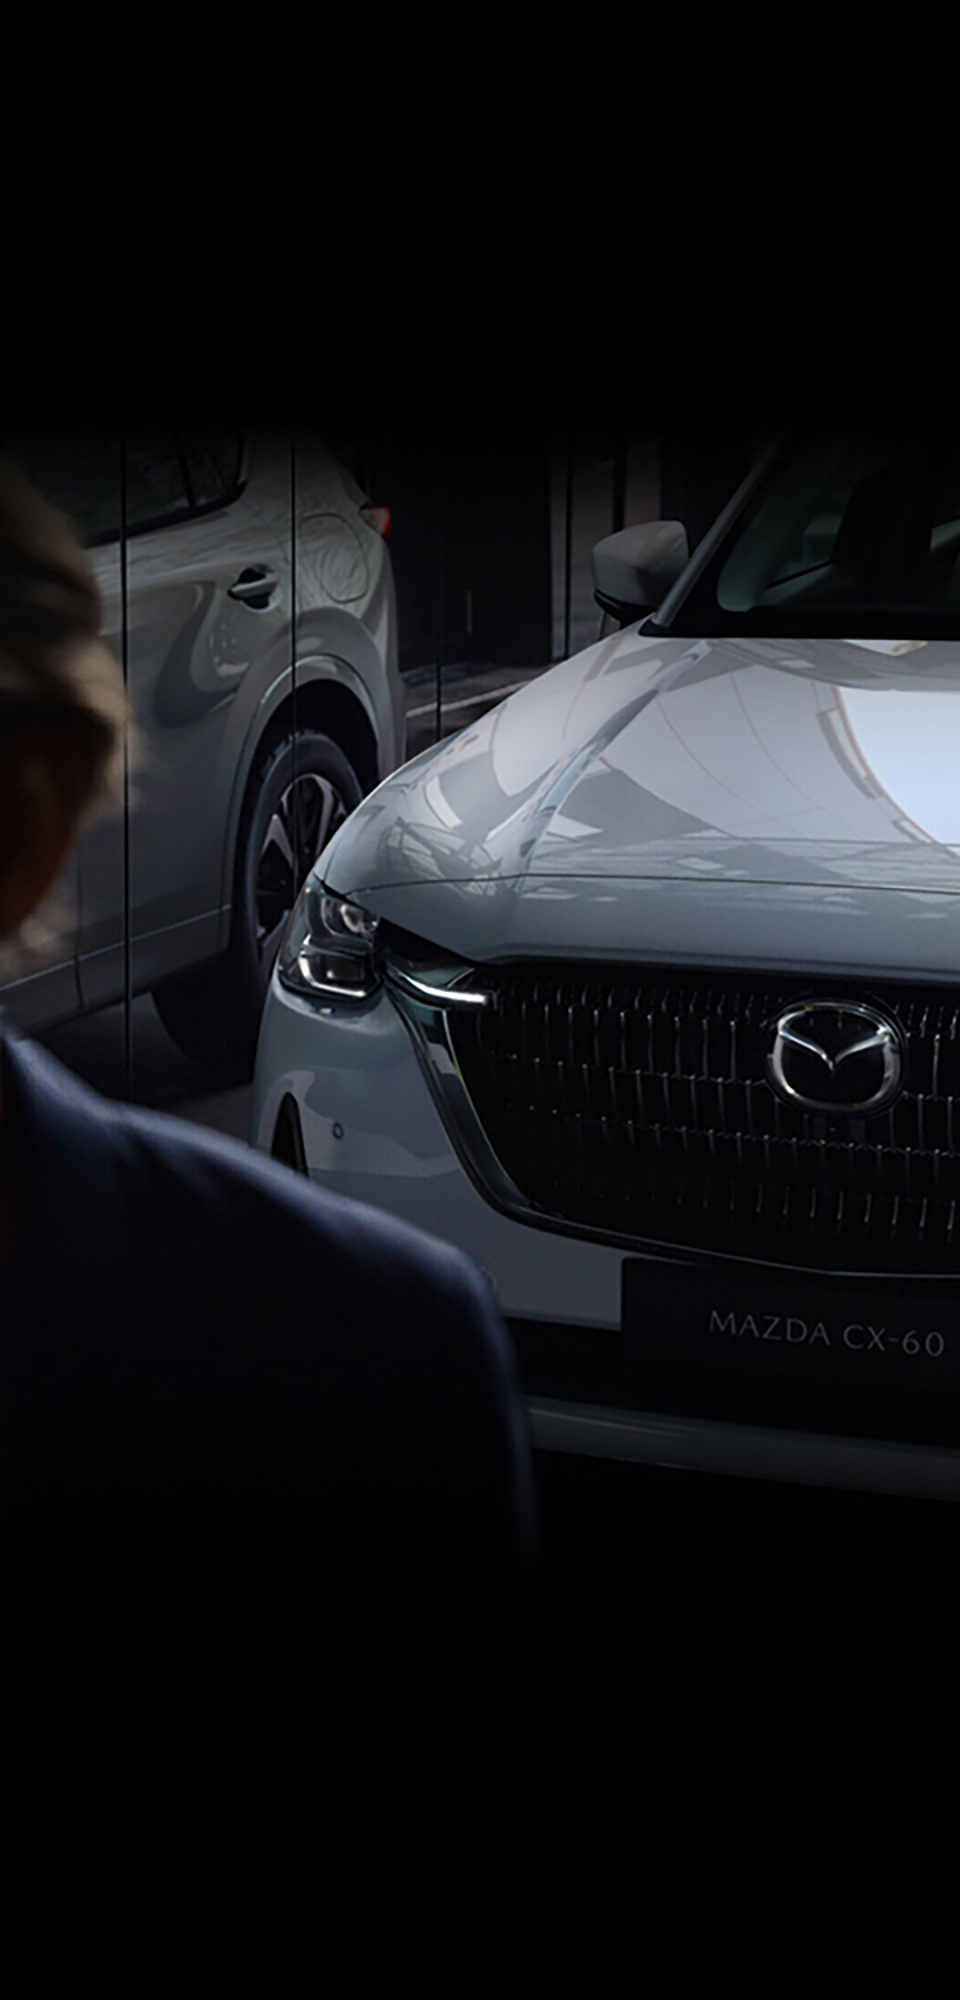 Noul SUV hibrid plug-in Mazda CX-60, prezentat din față, reflectat într-un geam